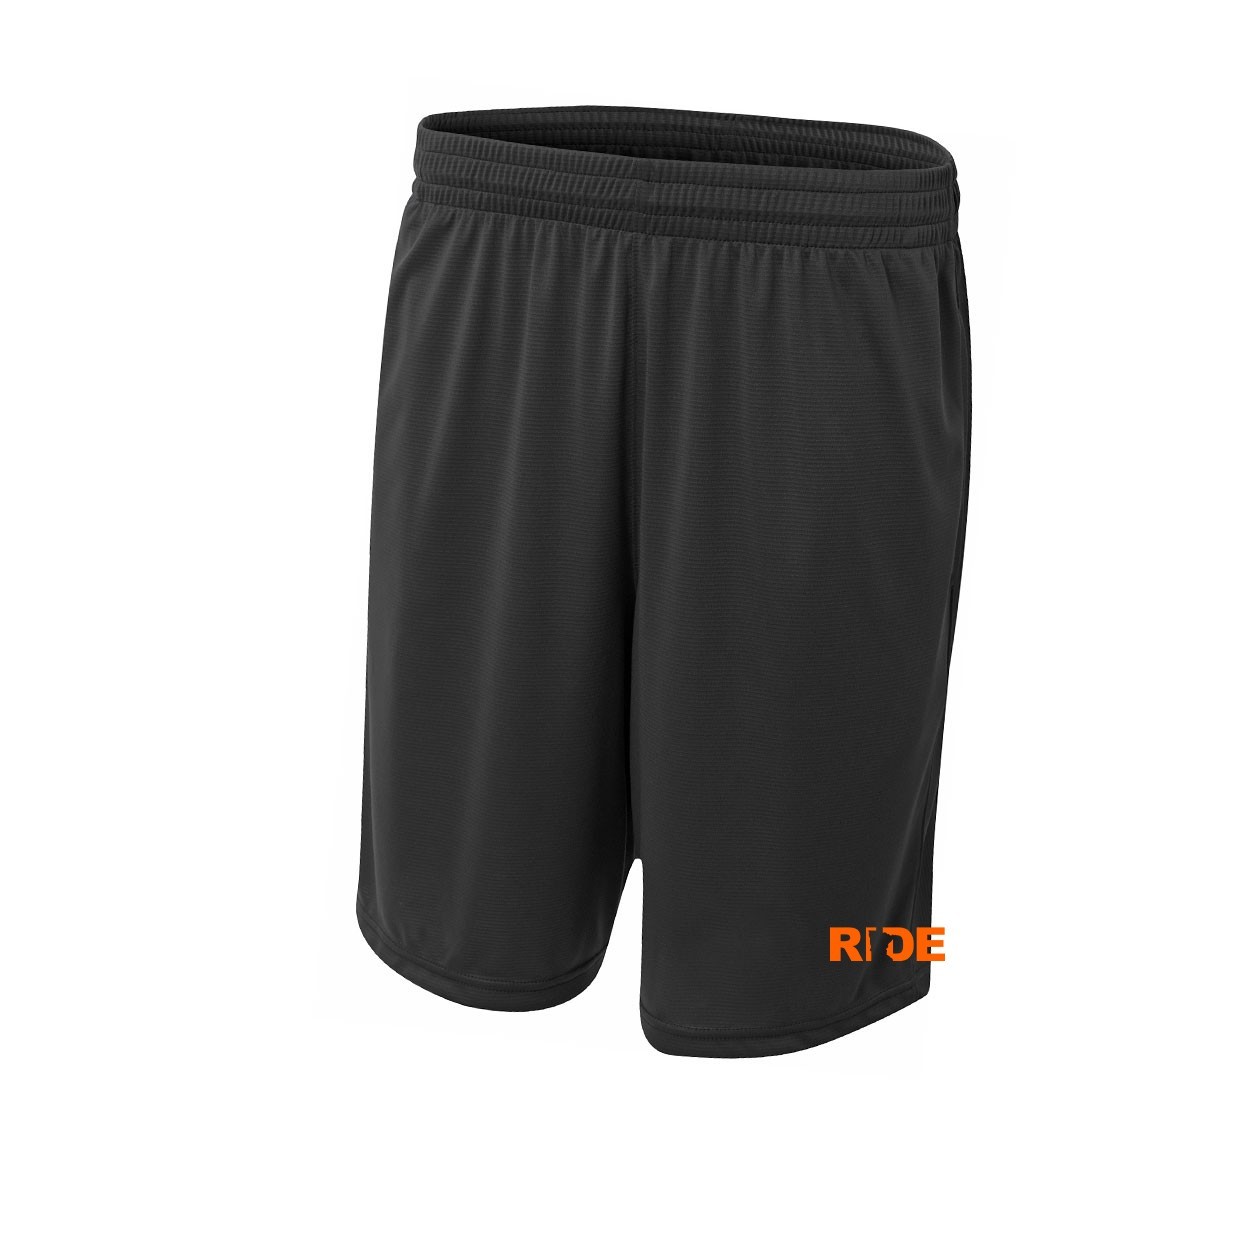 Ride Minnesota Classic Youth Unisex Shorts Black (Orange Logo)